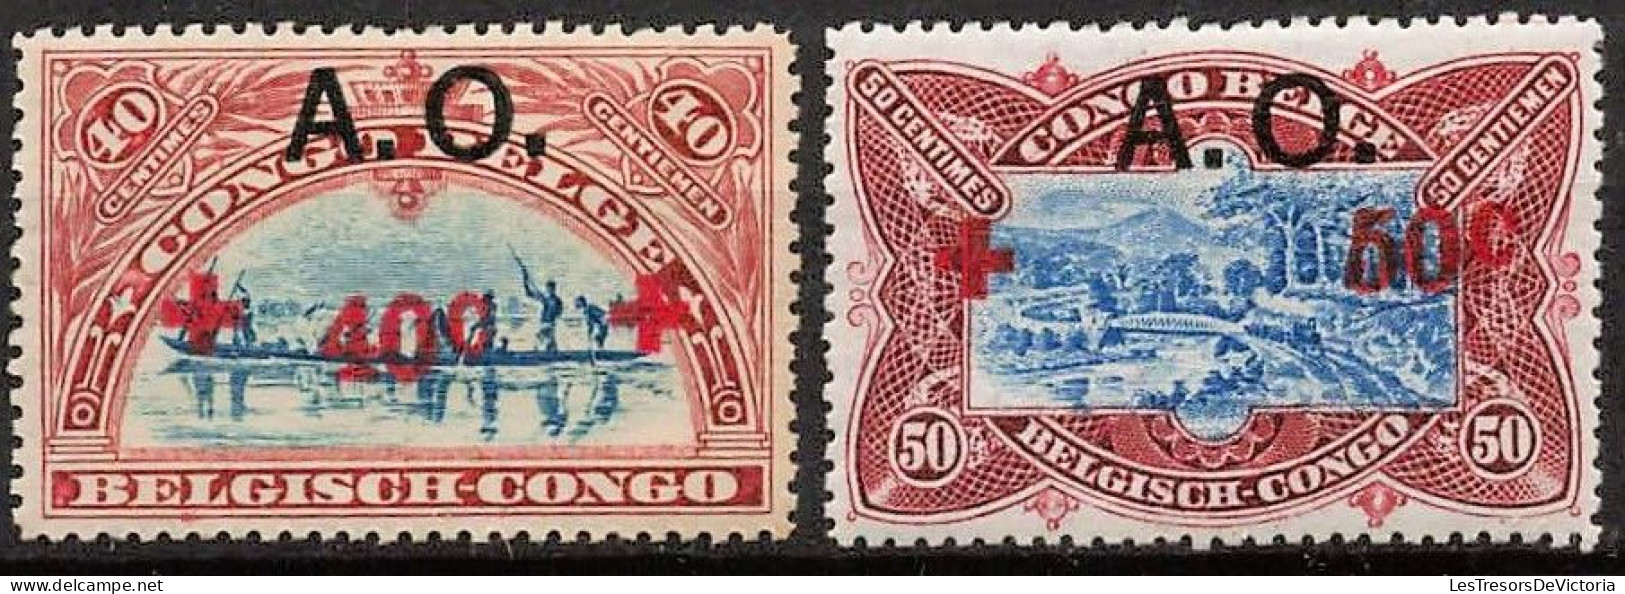 Timbres - Ruanda Urundi - 1918 - COB 36/44*  Croix Rouge - Cote 150 - Unused Stamps